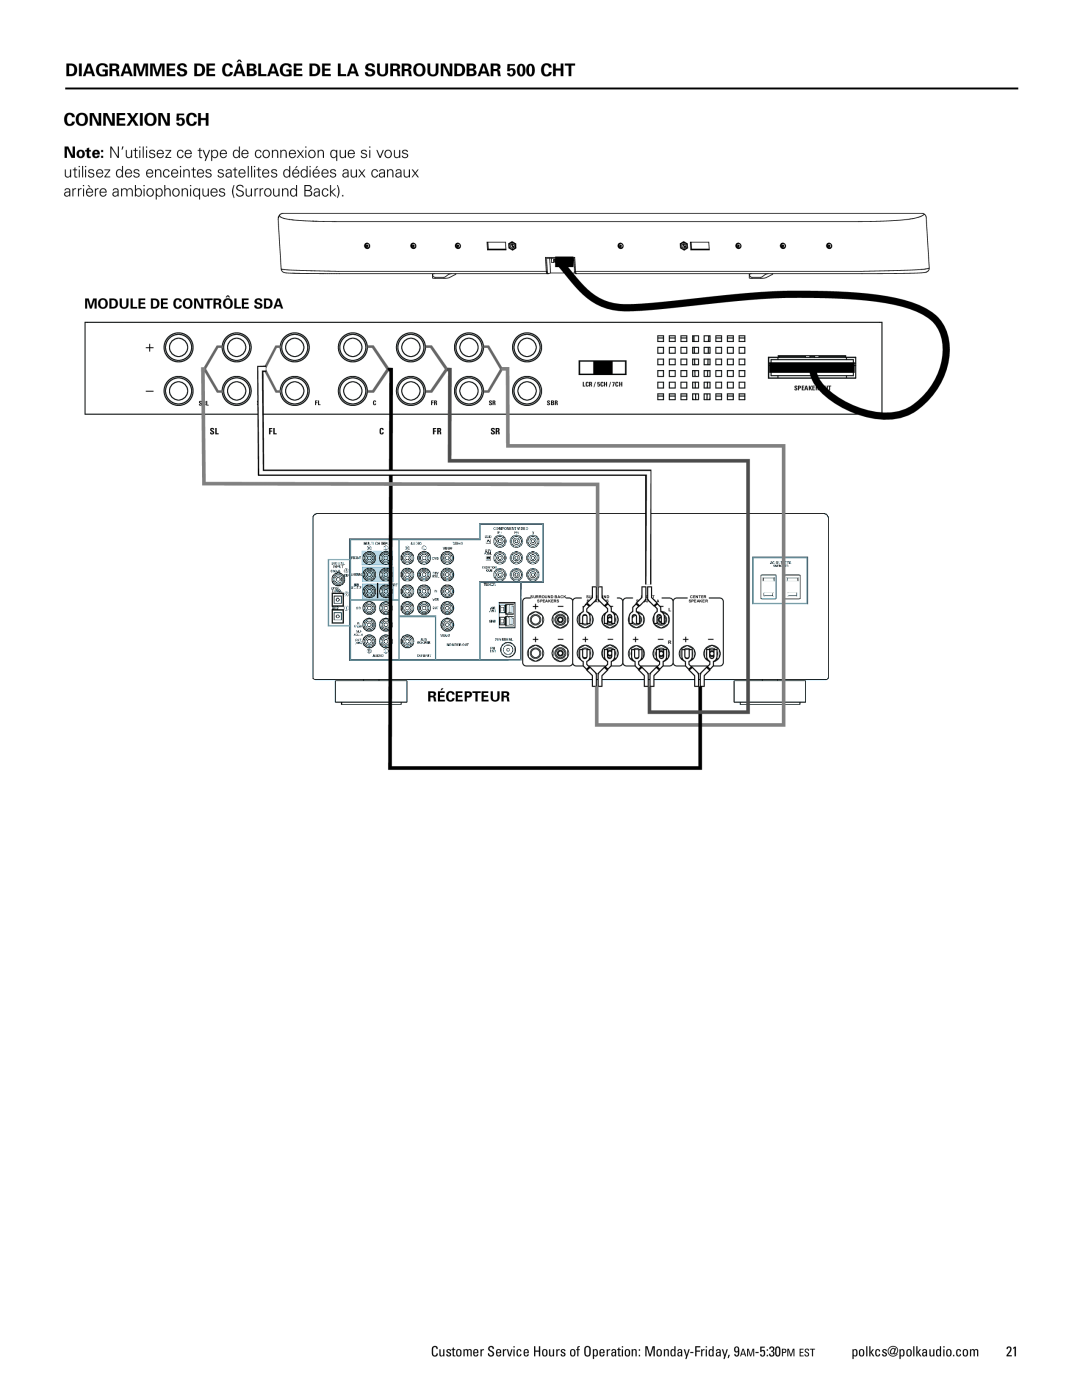 Polk Audio CHT400 manual DIAGRAMMES DE CÂBLAGE DE LA SURROUNDBAR 500 CHT CONNEXION 5CH, Module De Contrôle Sda, Récepteur 